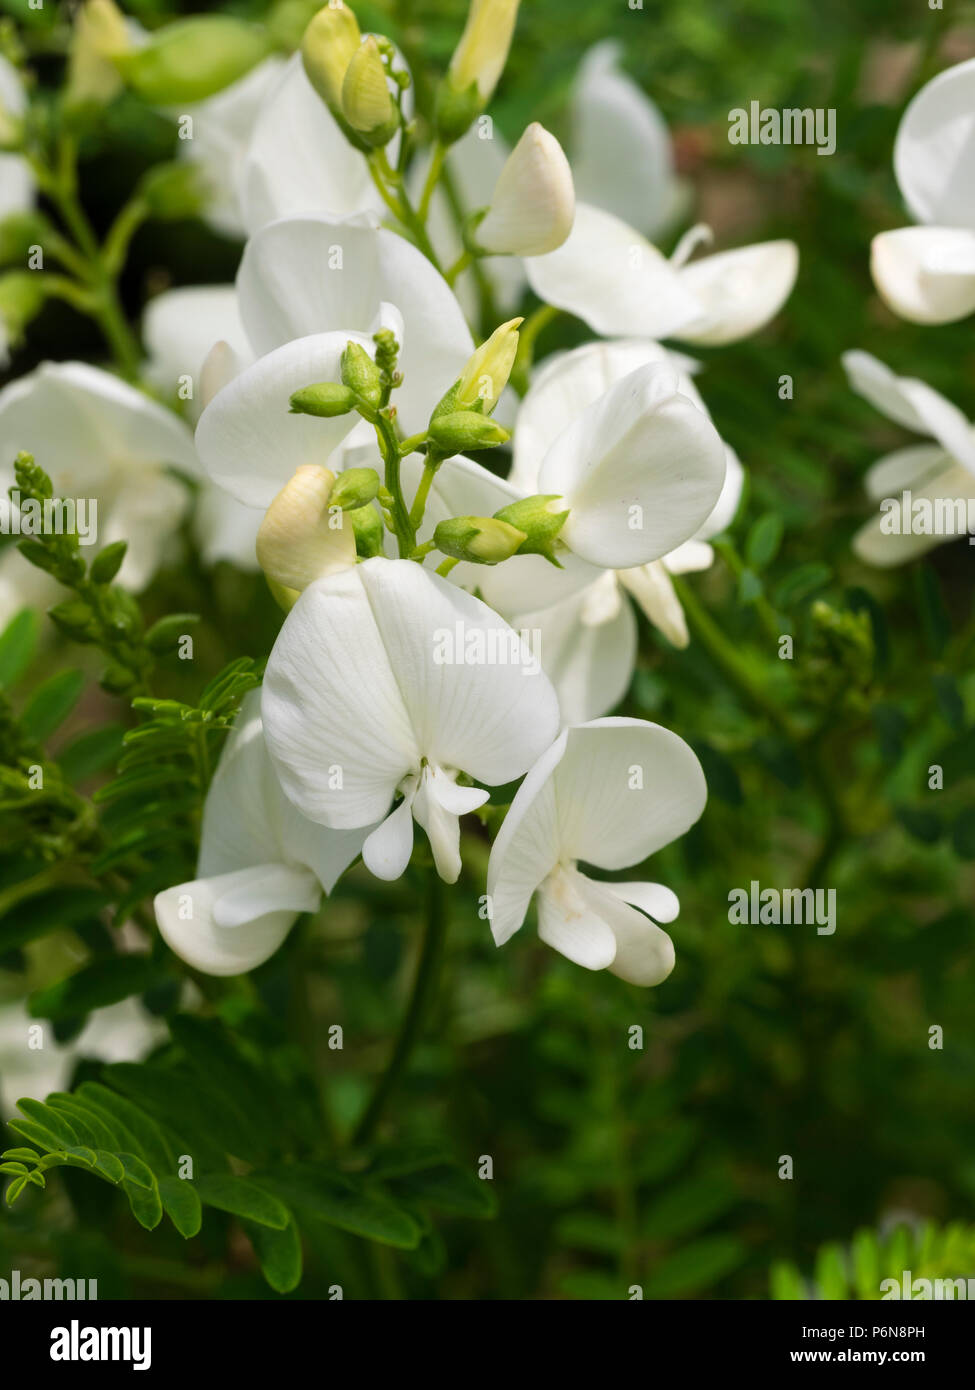 Guisante blanco flores de la licitación perenne australiano Swainsona galegifolia Darling guisante, 'Alba' Foto de stock